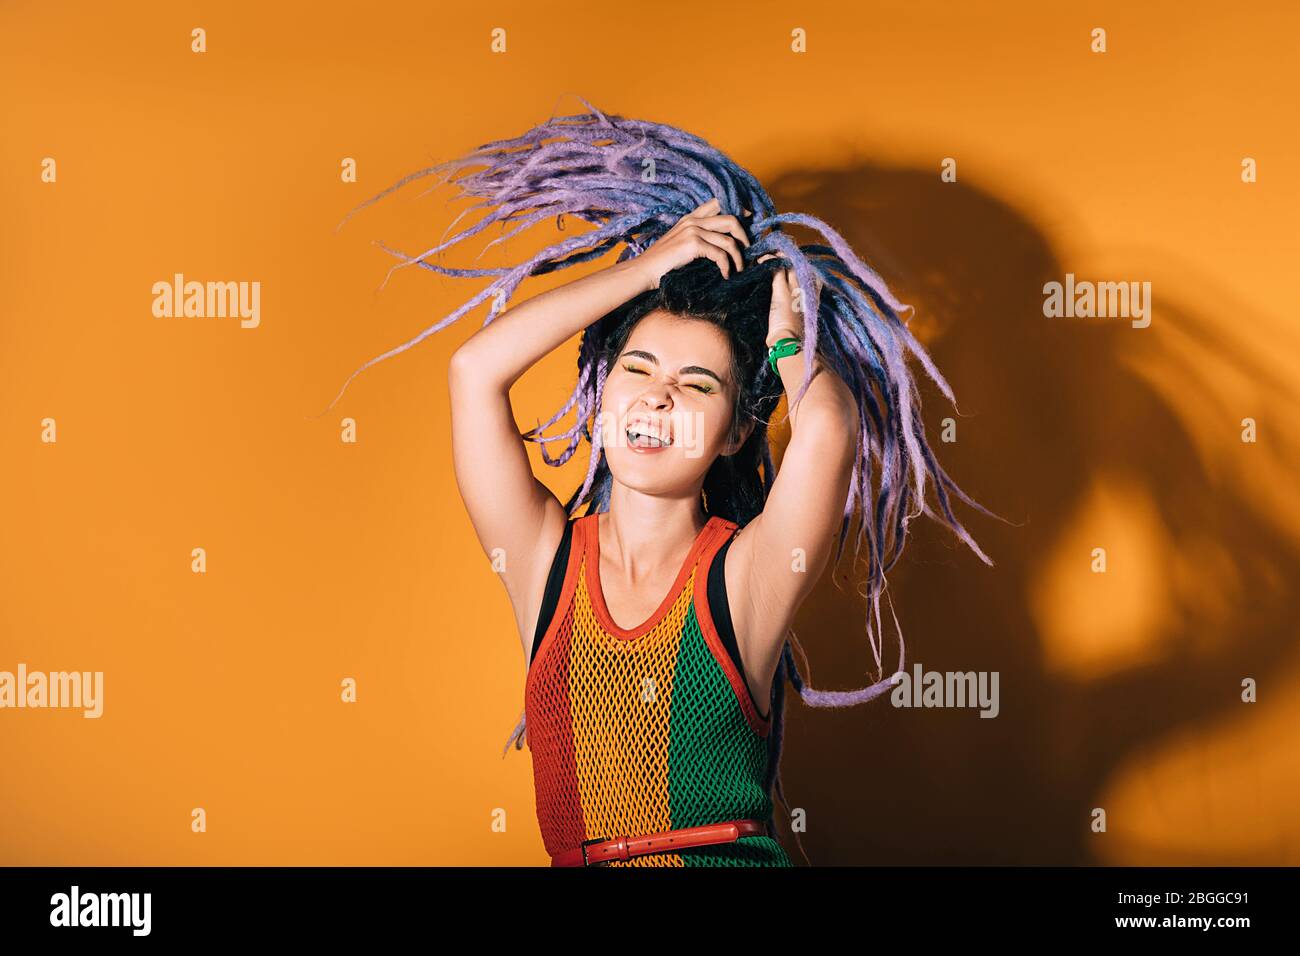 Frau mit lila Dreadlocks tanzt auf einem orangefarbenen Hintergrund. Hipster Frau genießt das Leben. Stockfoto